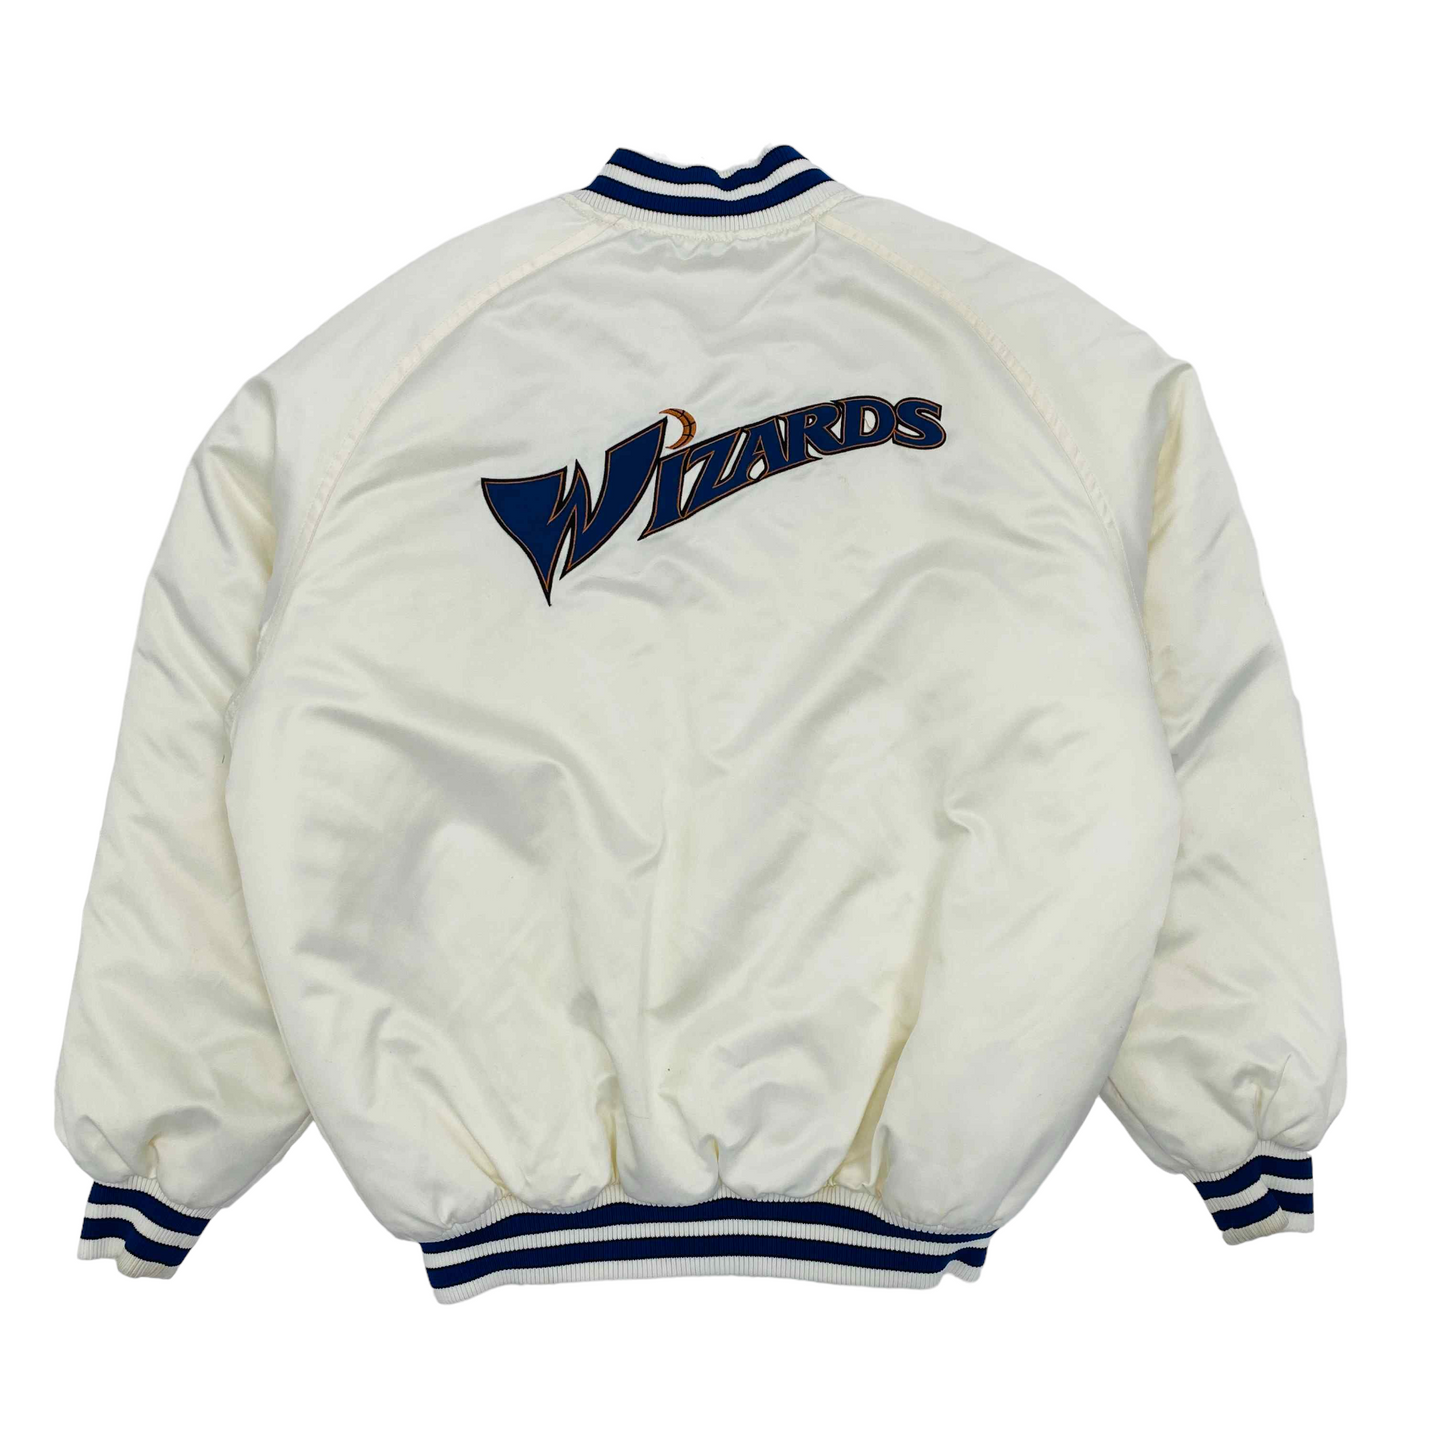 Washington Wizards Varsity Jacket Size Medium